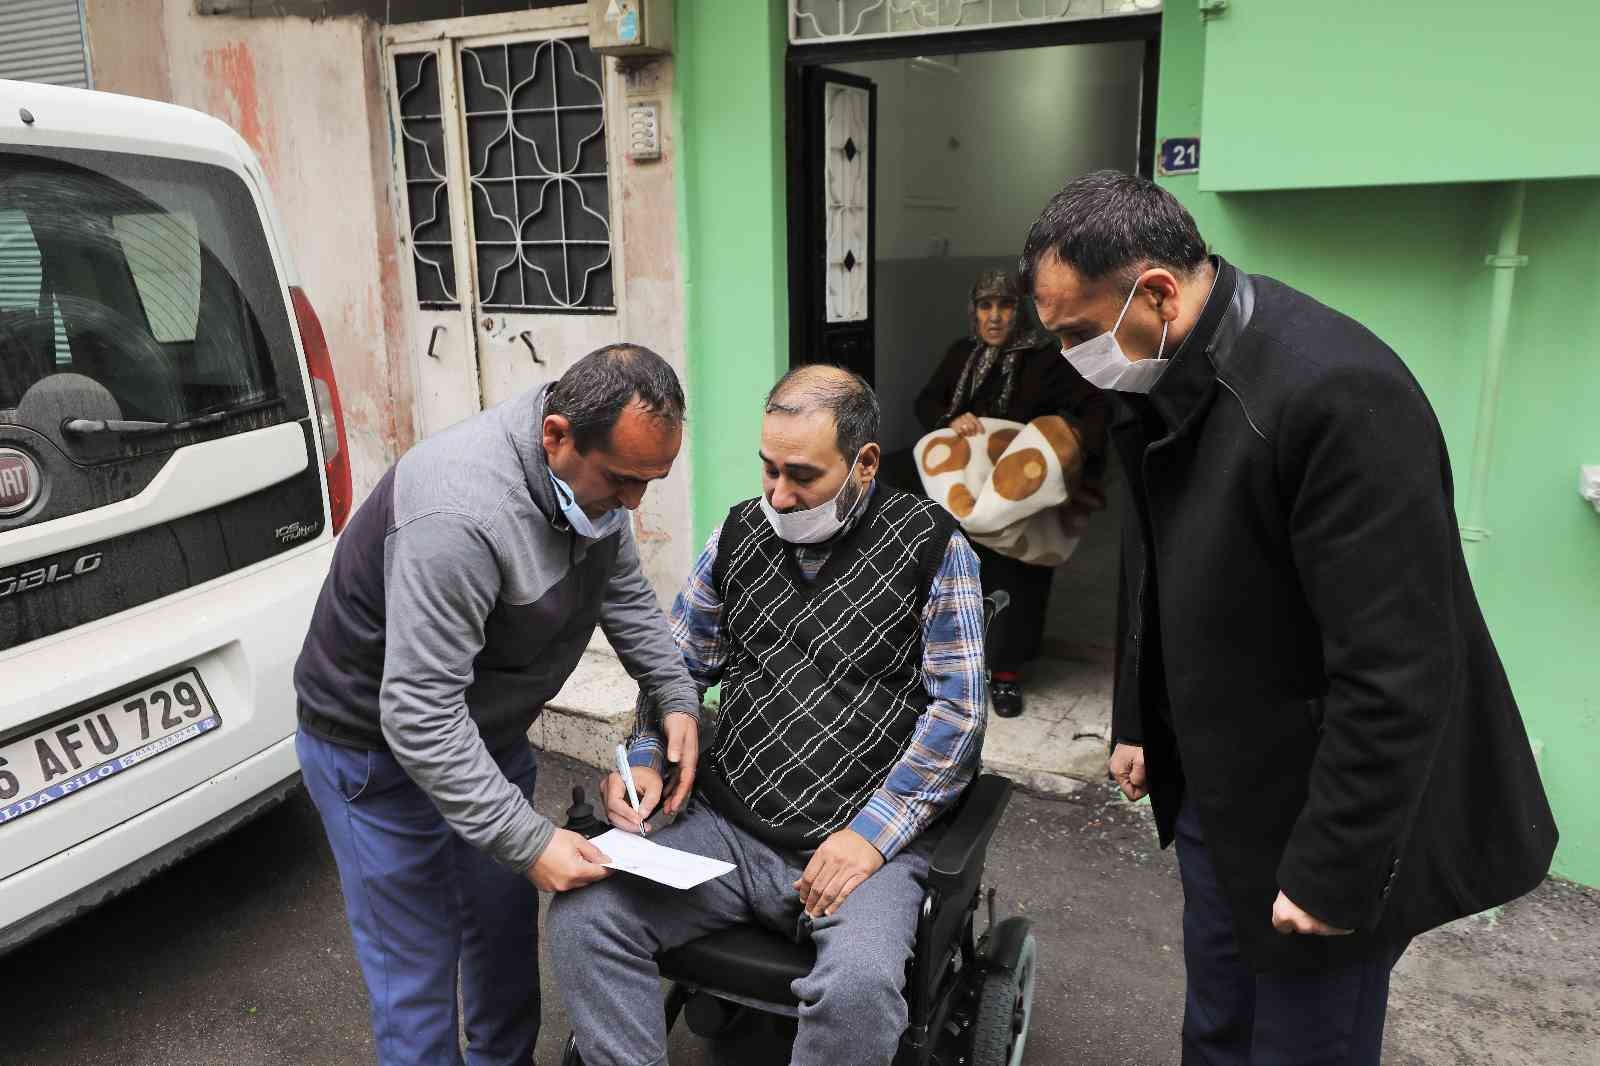 Akülü sandalyesi çalındı, belediye tekrardan hediye etti #gaziantep